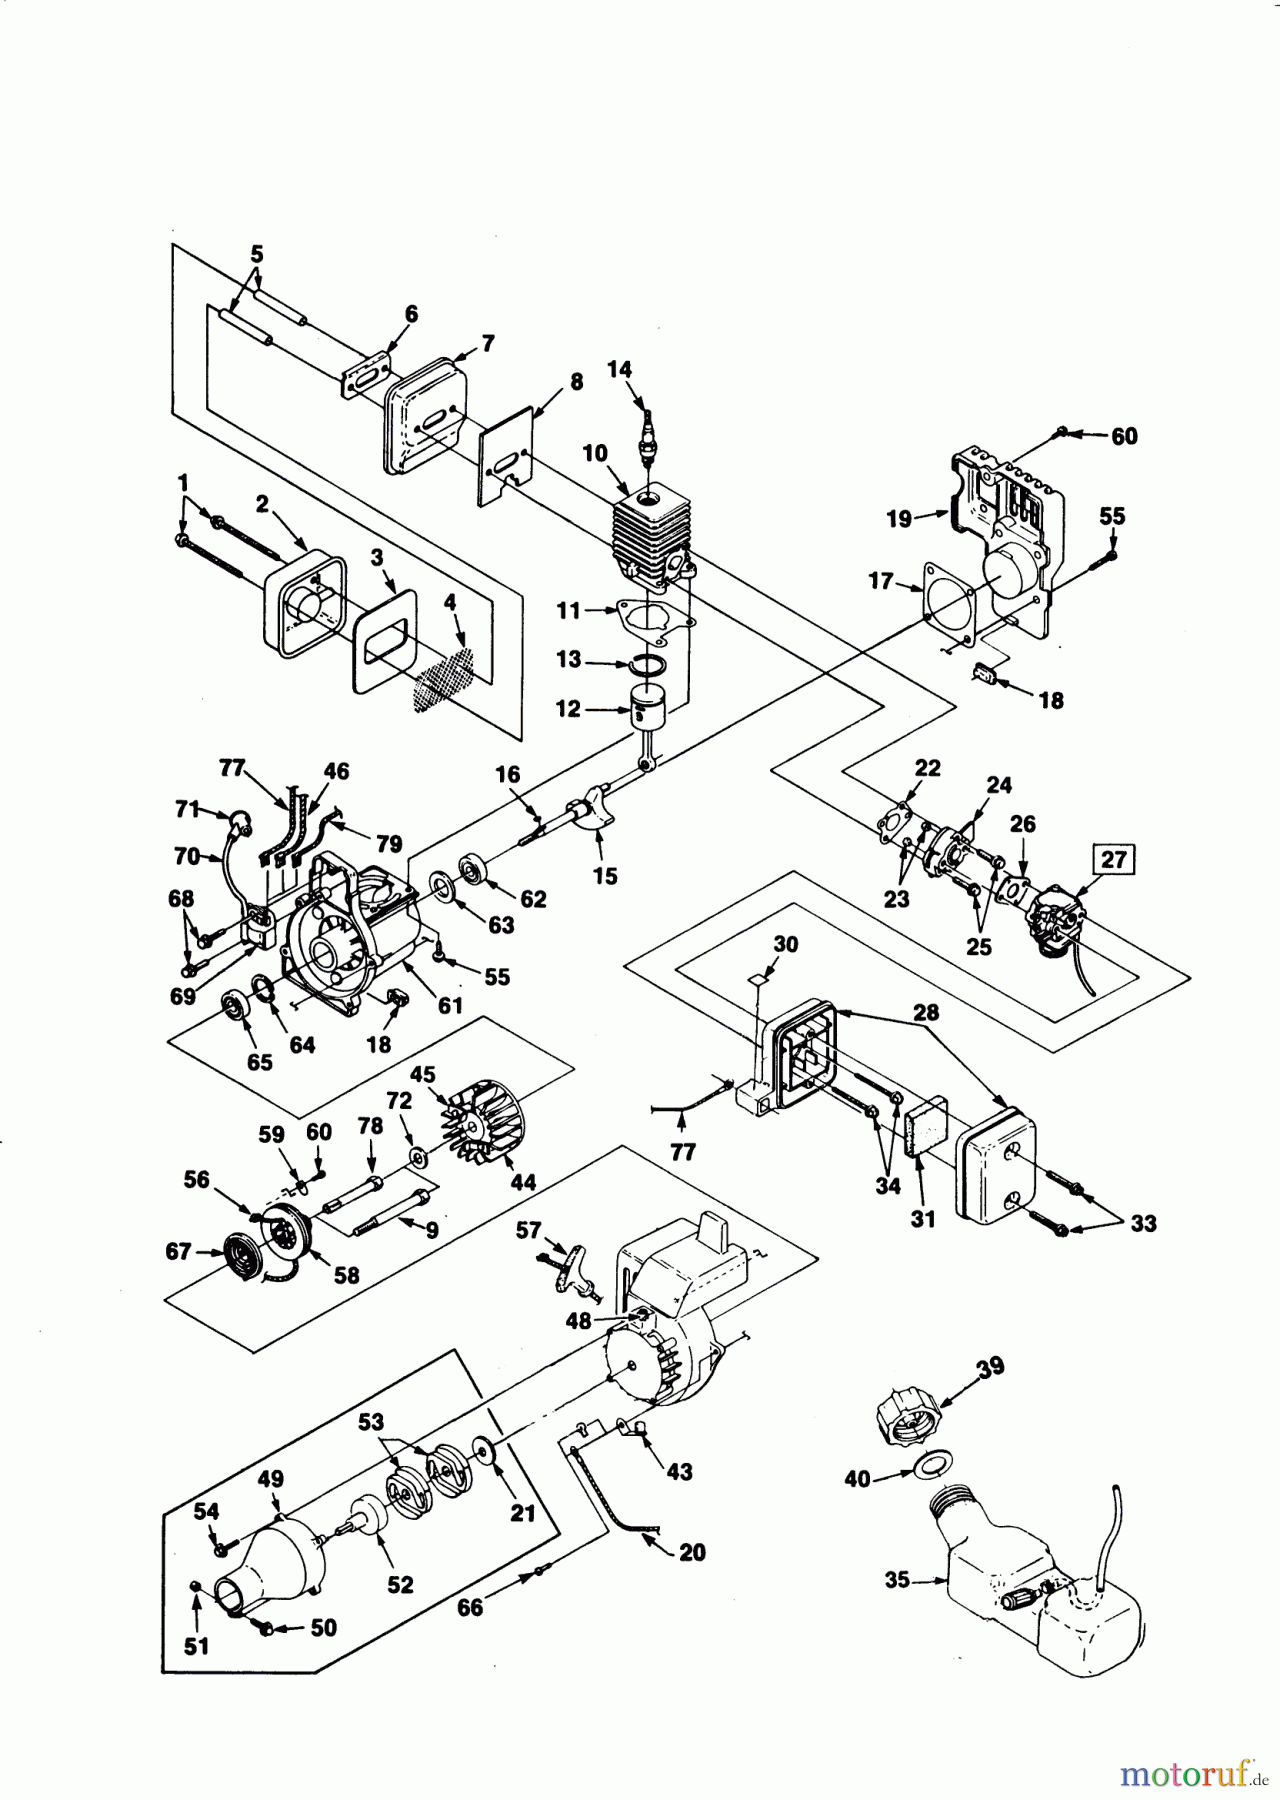  AL-KO Gartentechnik Motorsensen BC 250  02/1990 Seite 1